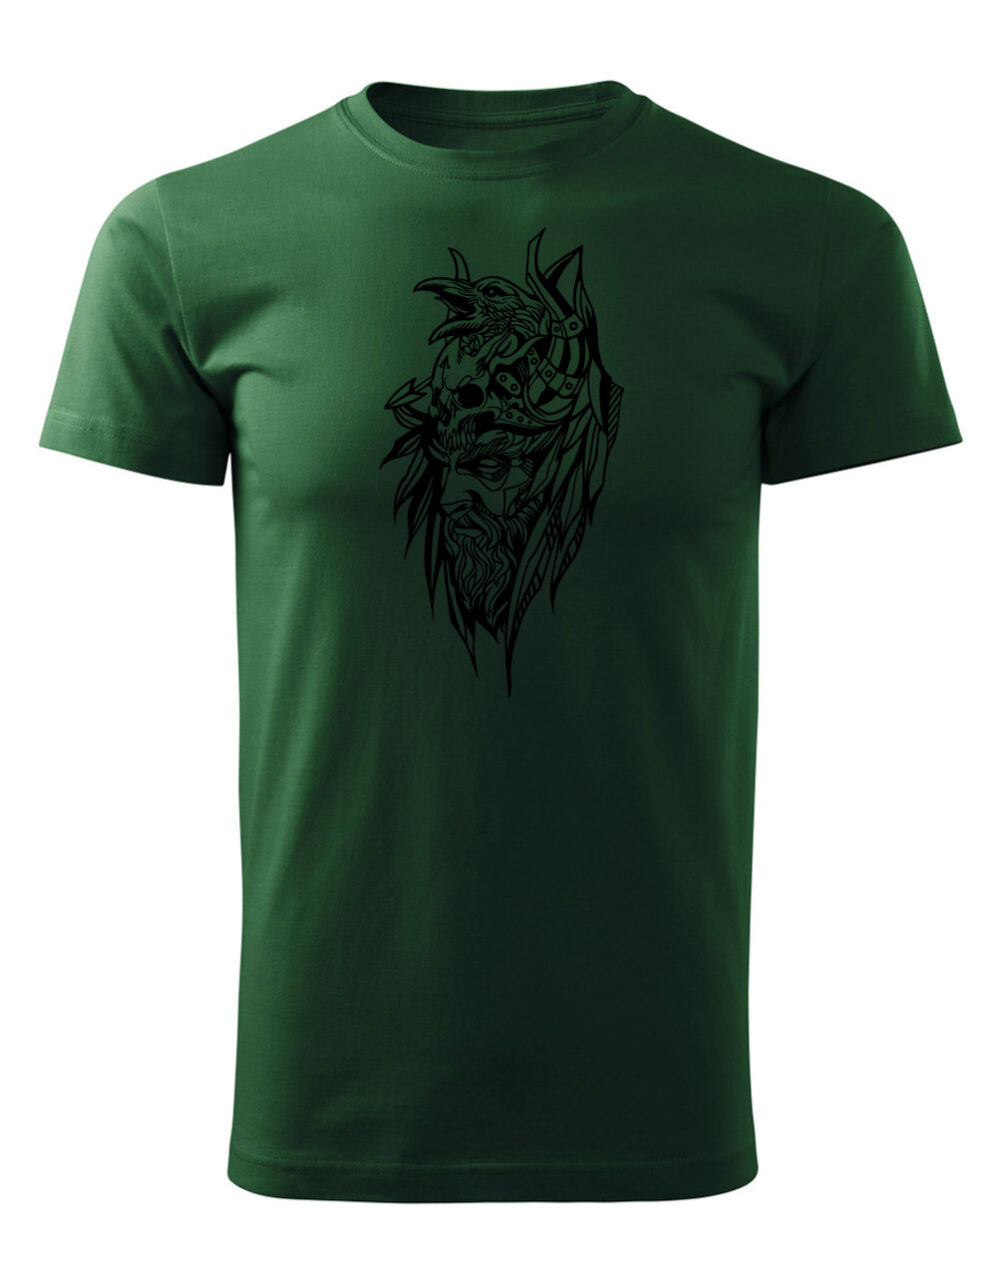 Pánské tričko s potiskem Bojovník lahvově zelená